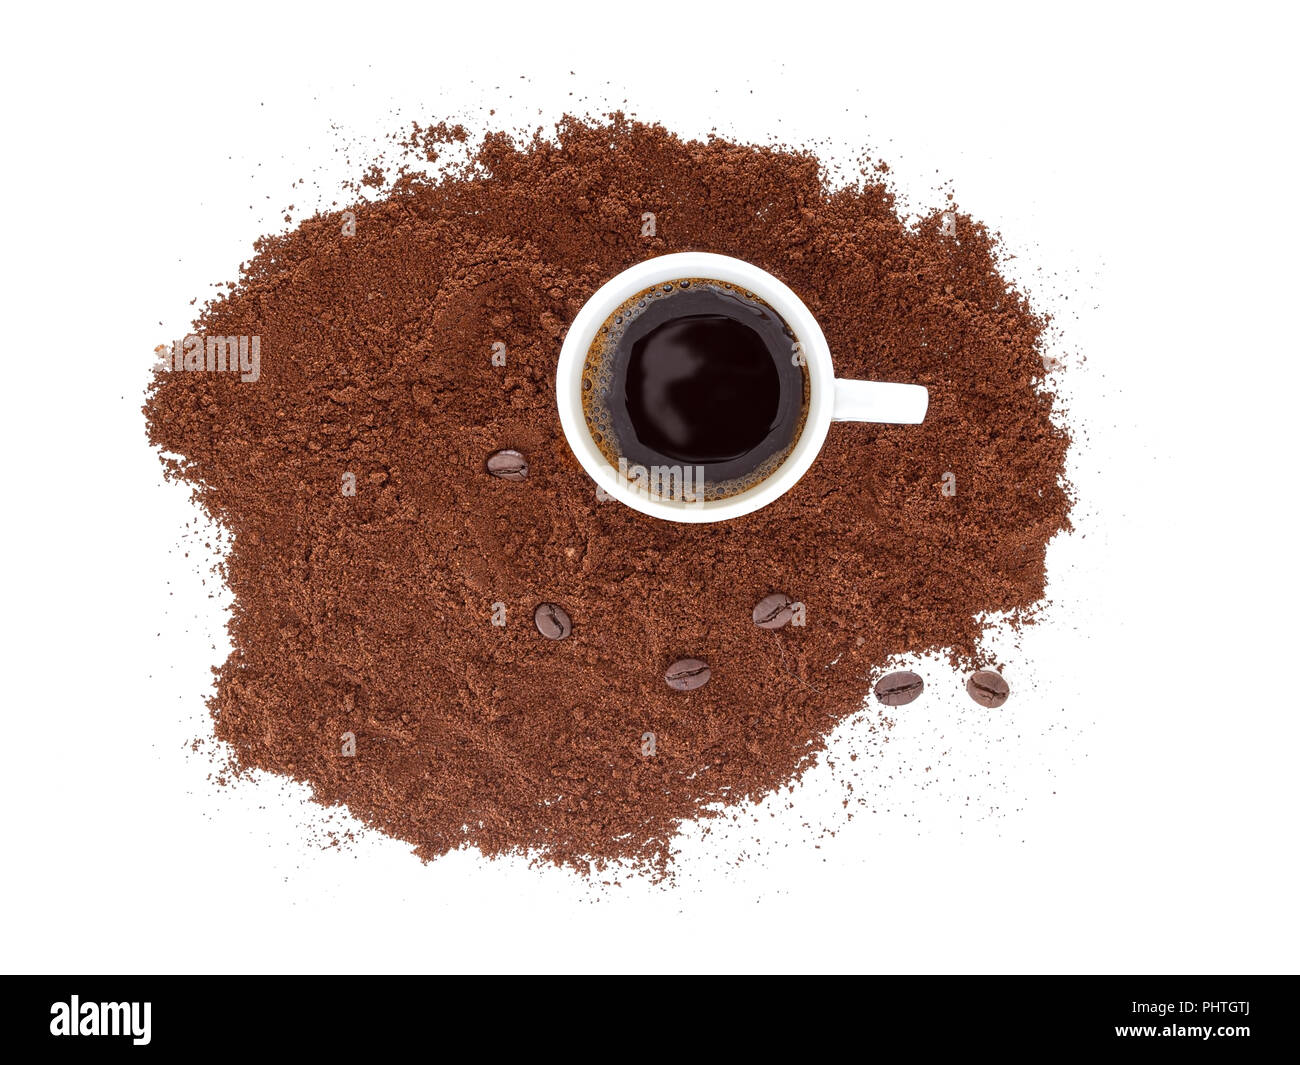 Strong, noir espresso dans une tasse blanche, avec du café fraîchement moulu et des haricots. Isolé sur fond blanc. Banque D'Images